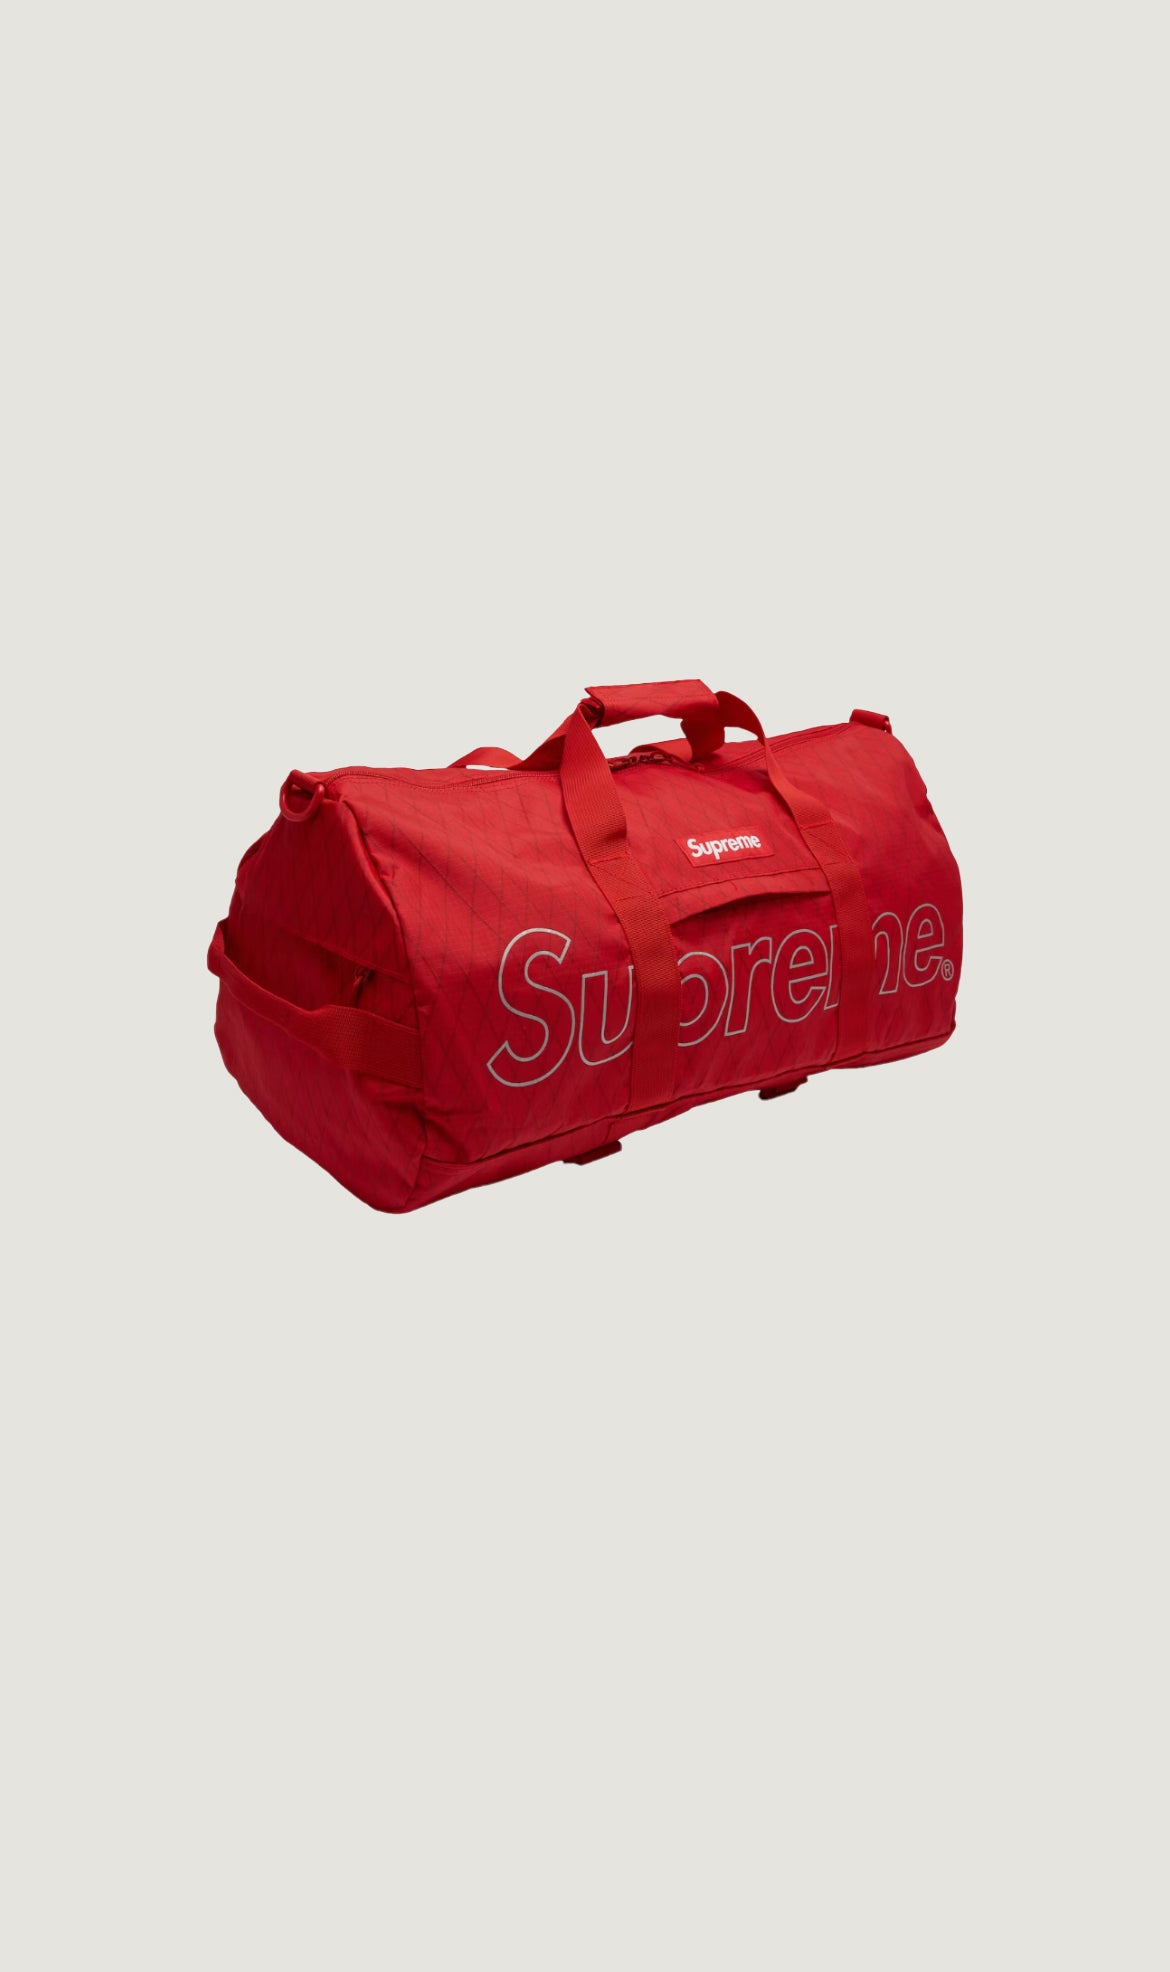 【新品】Supreme Duffle Bag/Red